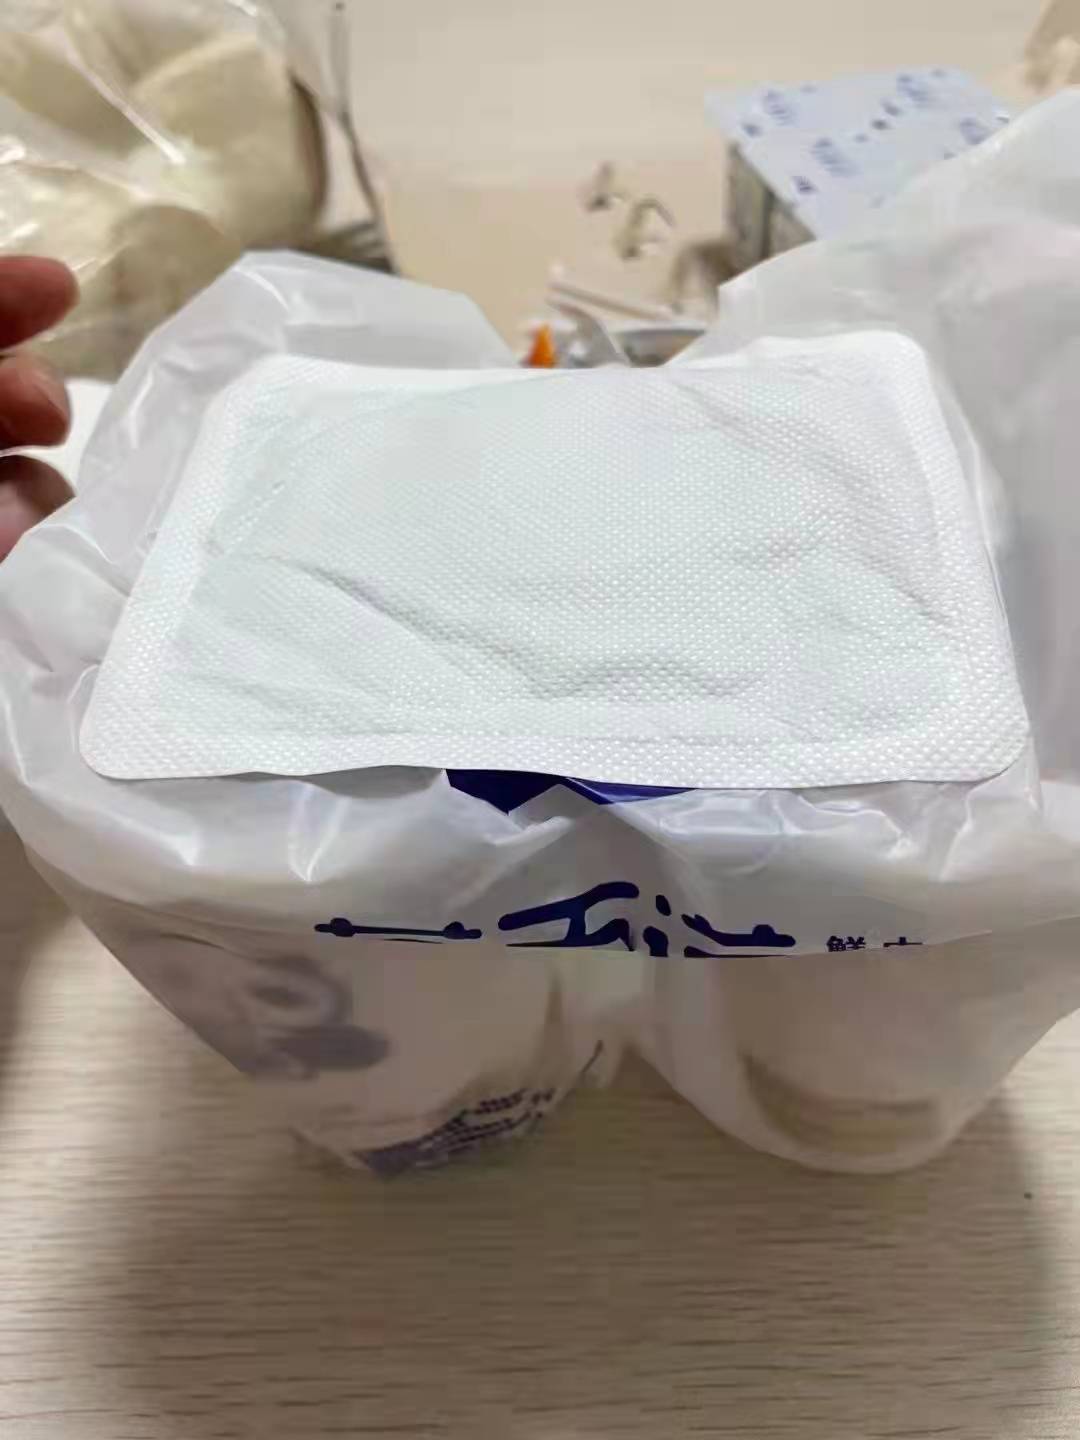 直击郑州核酸检测现场：居民送奶茶担心凉 给奶茶贴上暖宝宝